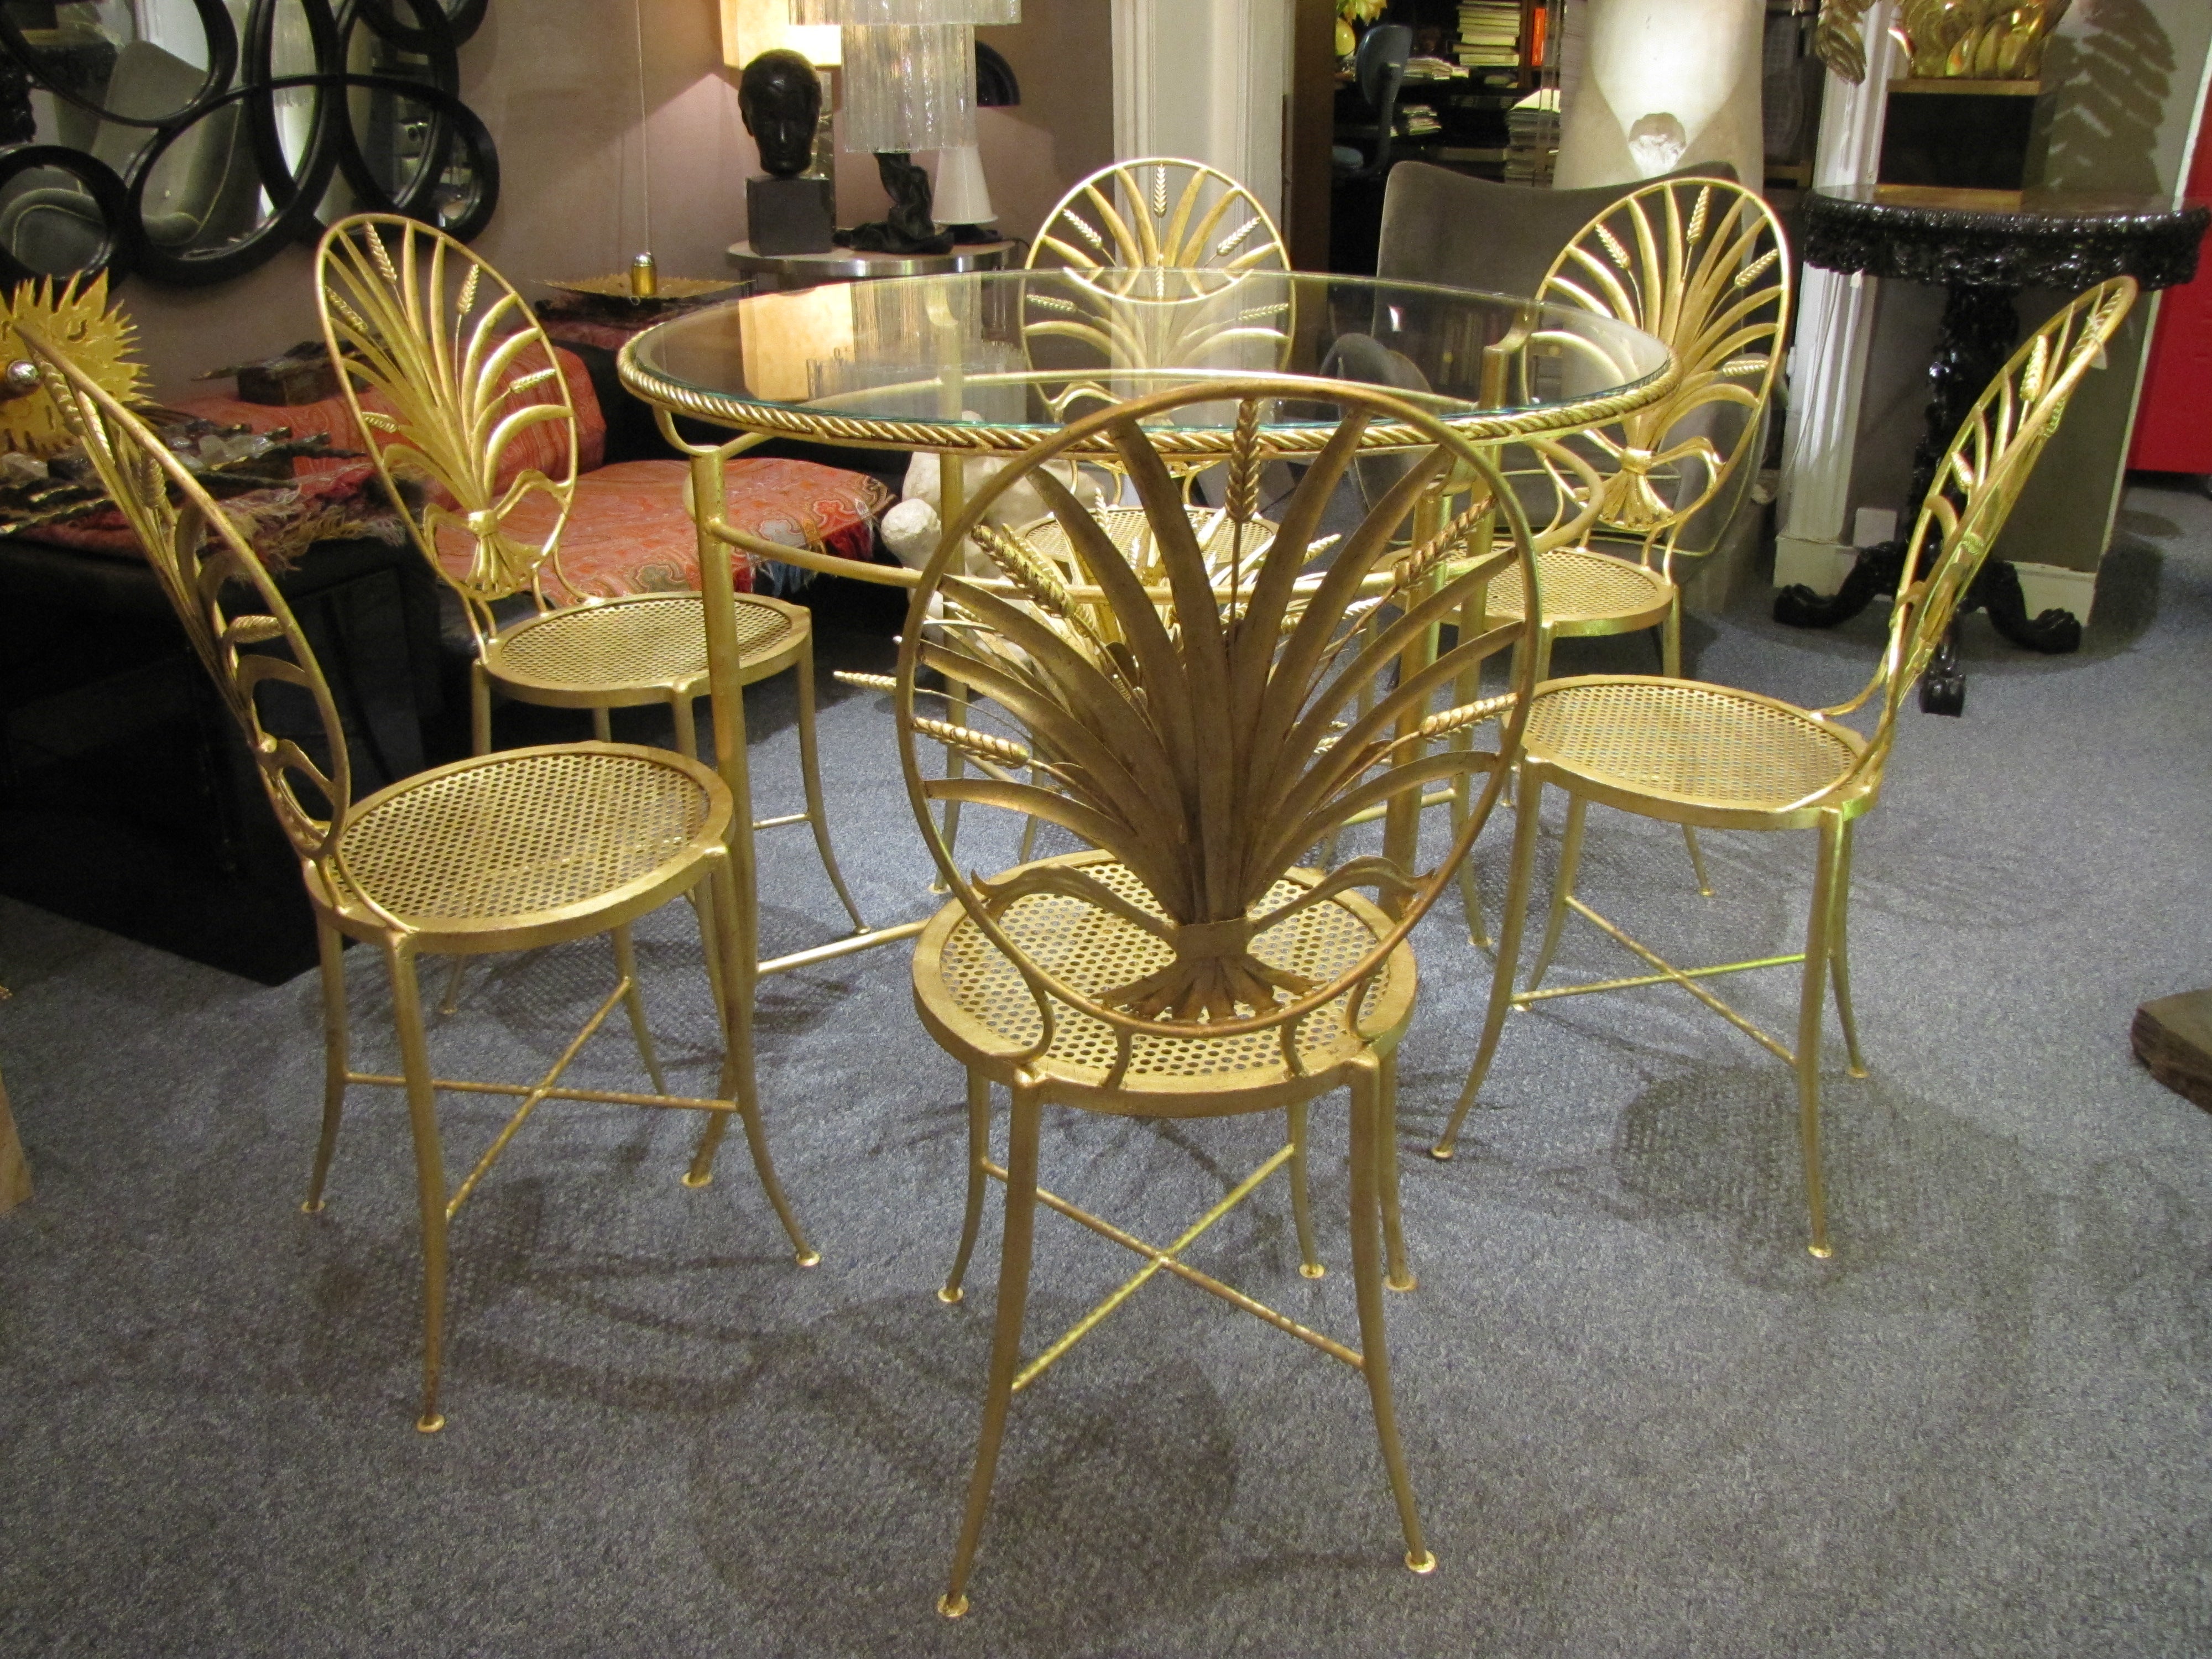 Seltener italienischer Tisch und sechs Stühle aus den 1960er Jahren mit aufwändig gestalteten Rückenlehnen in Form einer Weizengarbe. Erhoben auf wunderschönen schlanken Beinen mit X-Stretchern, klassische italienische Vergoldung. Hergestellt von S.